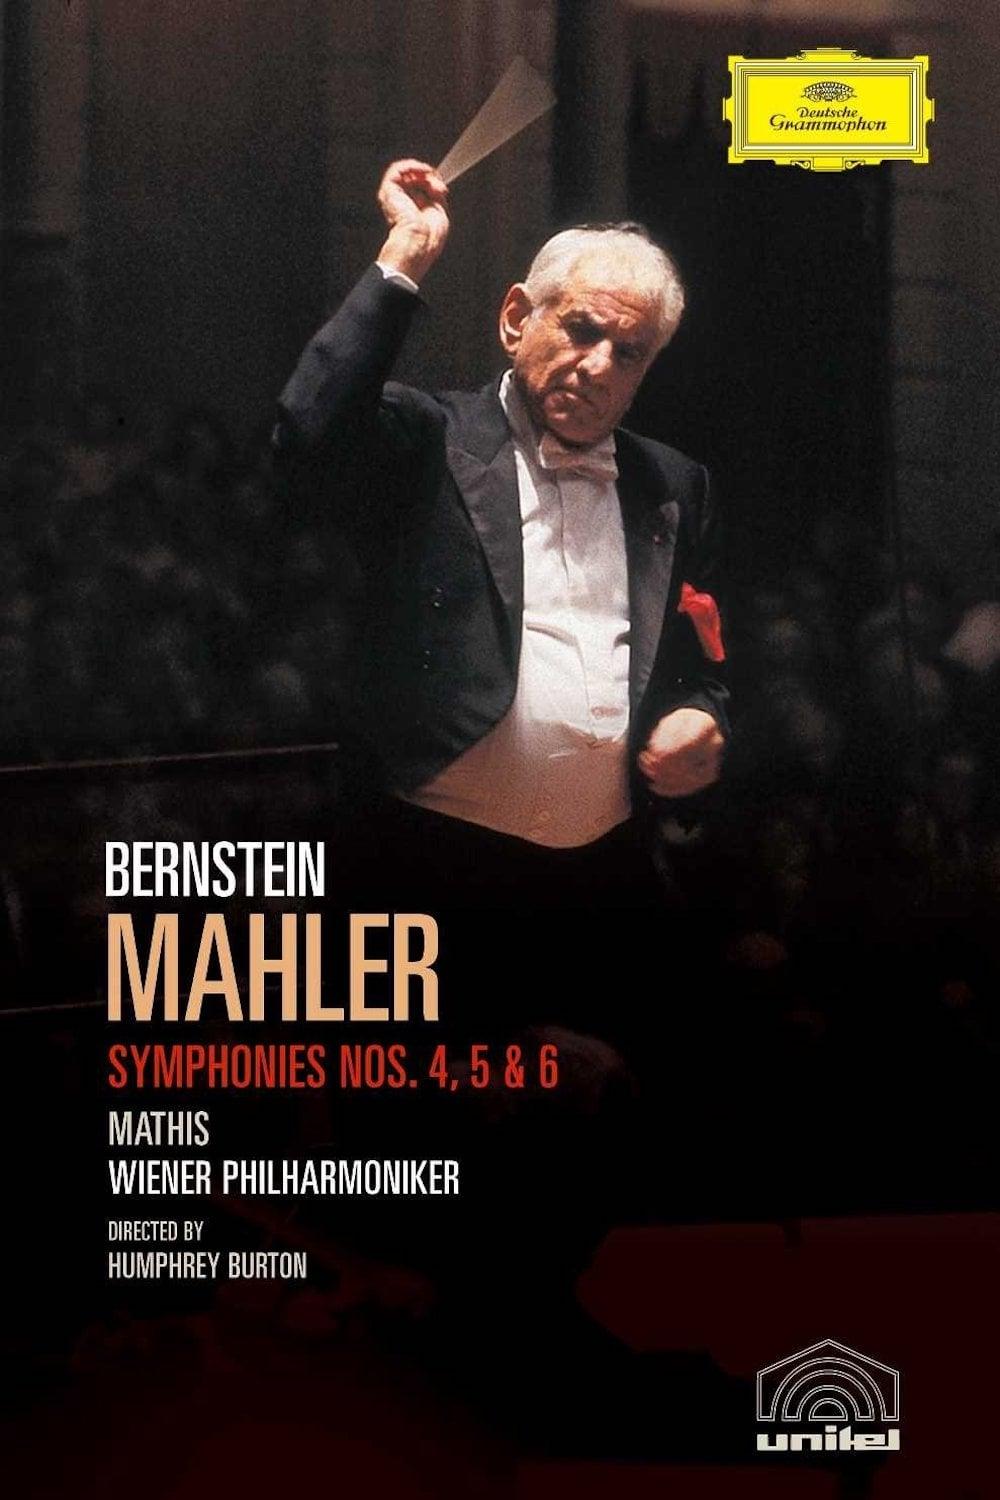 Mahler - Symphonies Nos. 9 & 10 / Das Lied von der Erde poster